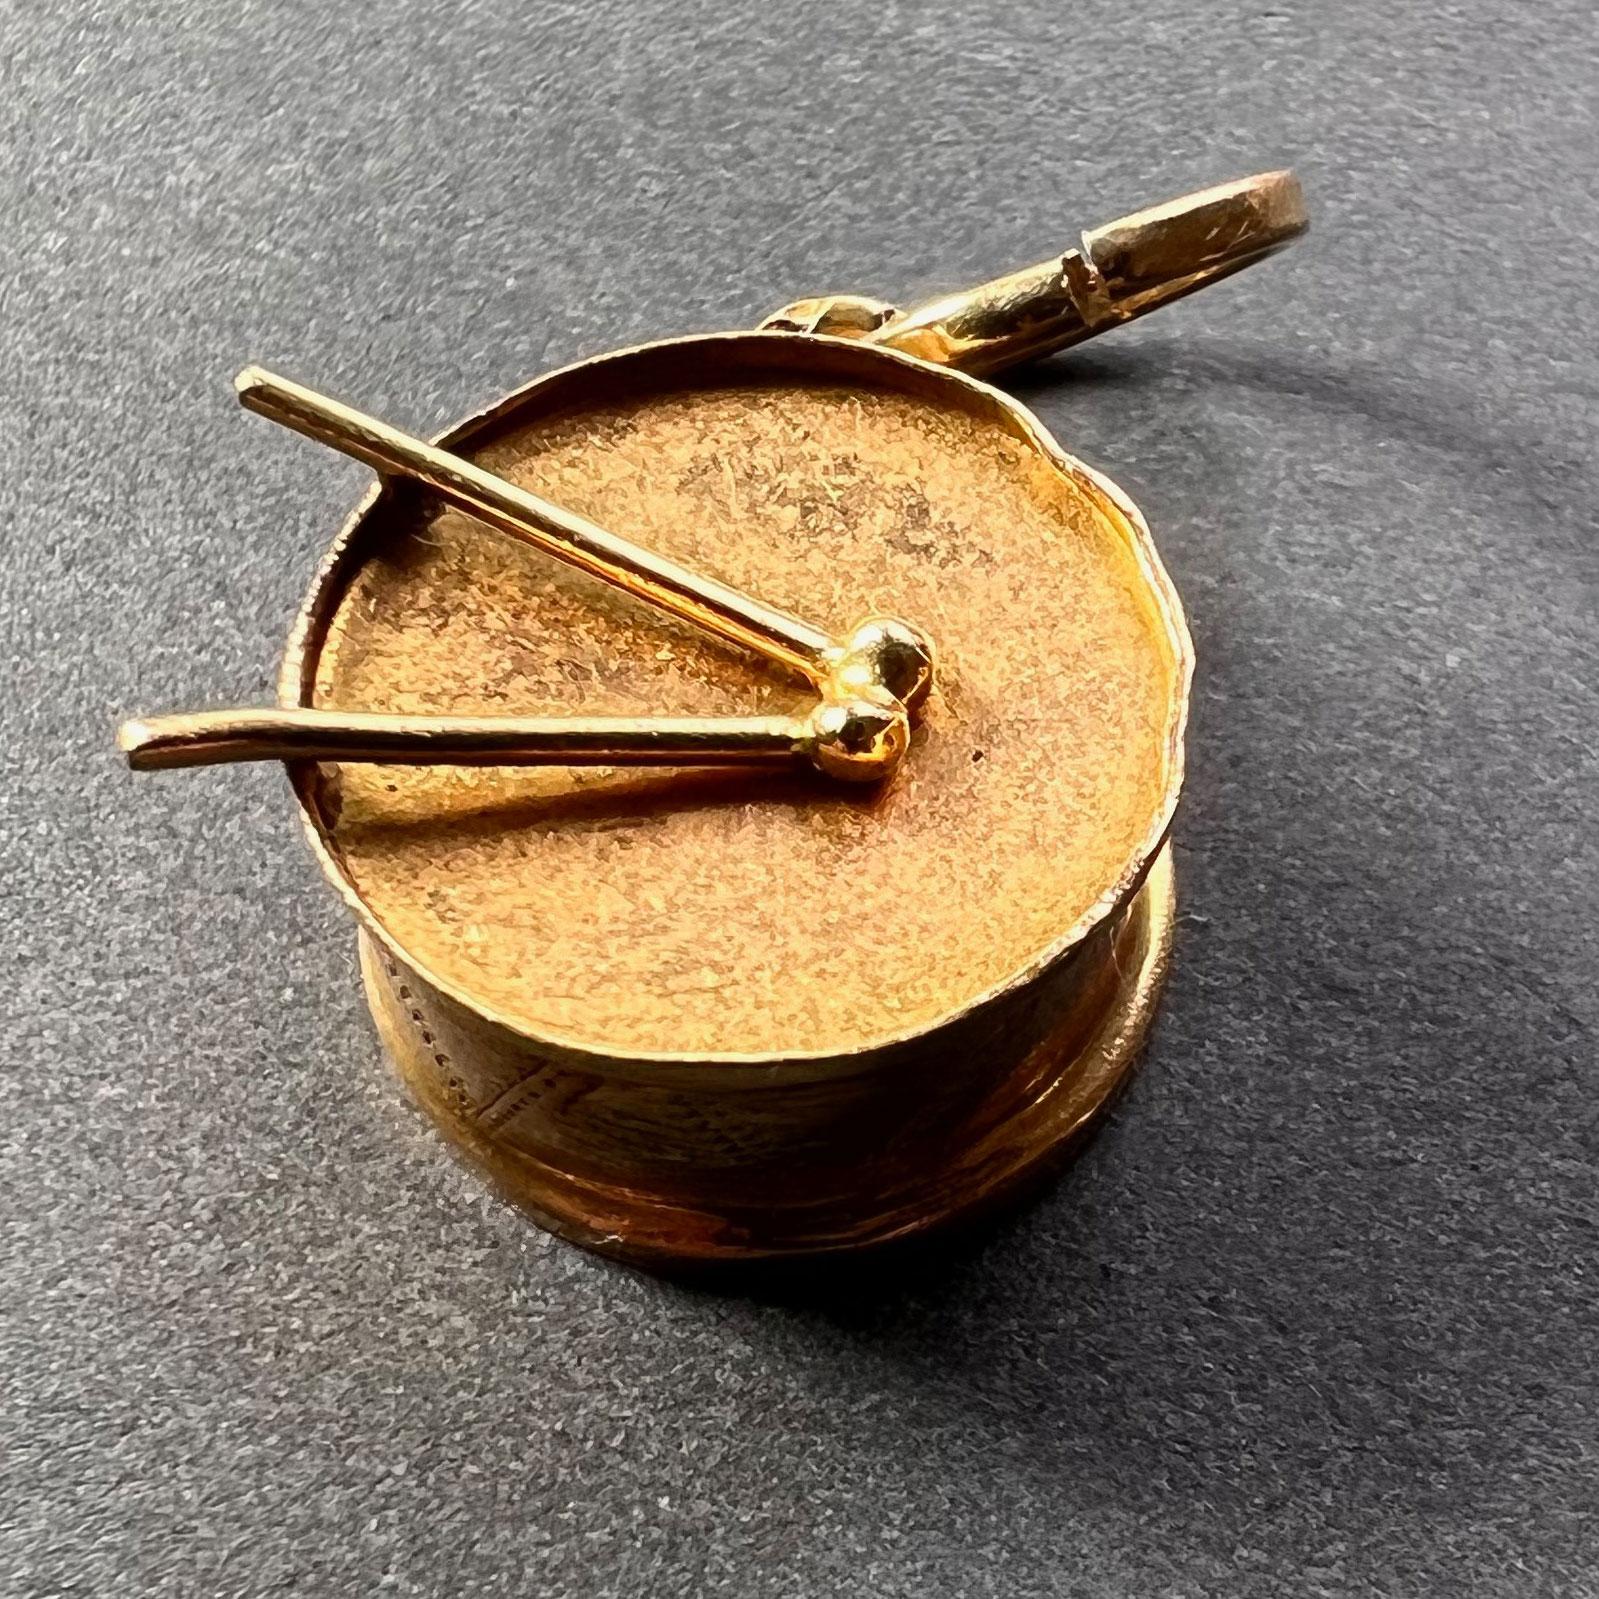 Un pendentif de charme en or jaune 18 carats (18K) conçu comme un tambour. Estampillé 750 pour de l'or 18 carats sur l'anse.
 
Dimensions : 1.7 x 1,6 x 0,7 cm (sans l'anneau)
Poids : 2,20 grammes
